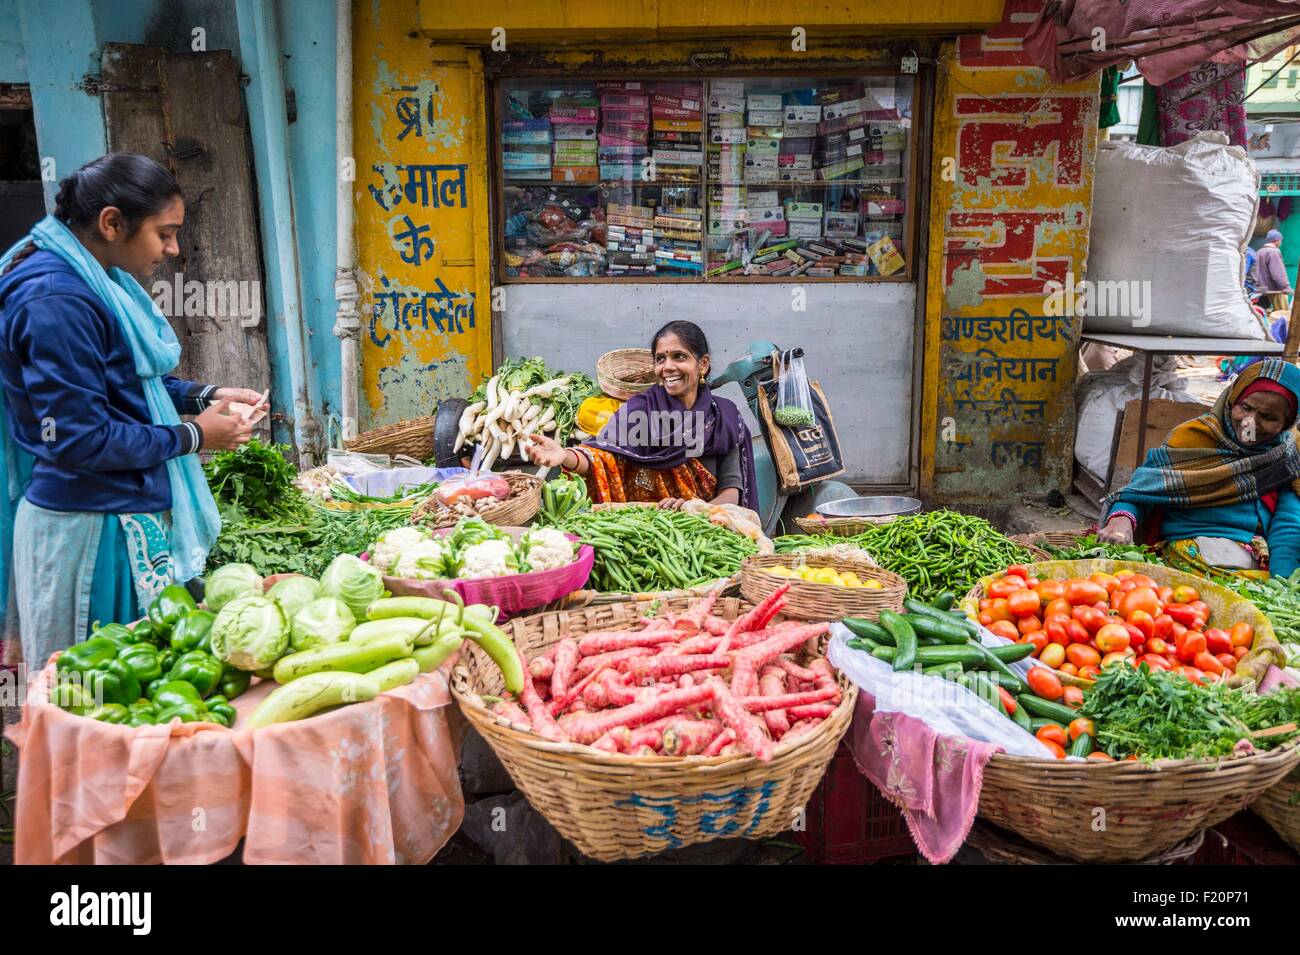 L'Inde, Rajasthan, Udaipur, le marché de fruits et légumes Banque D'Images